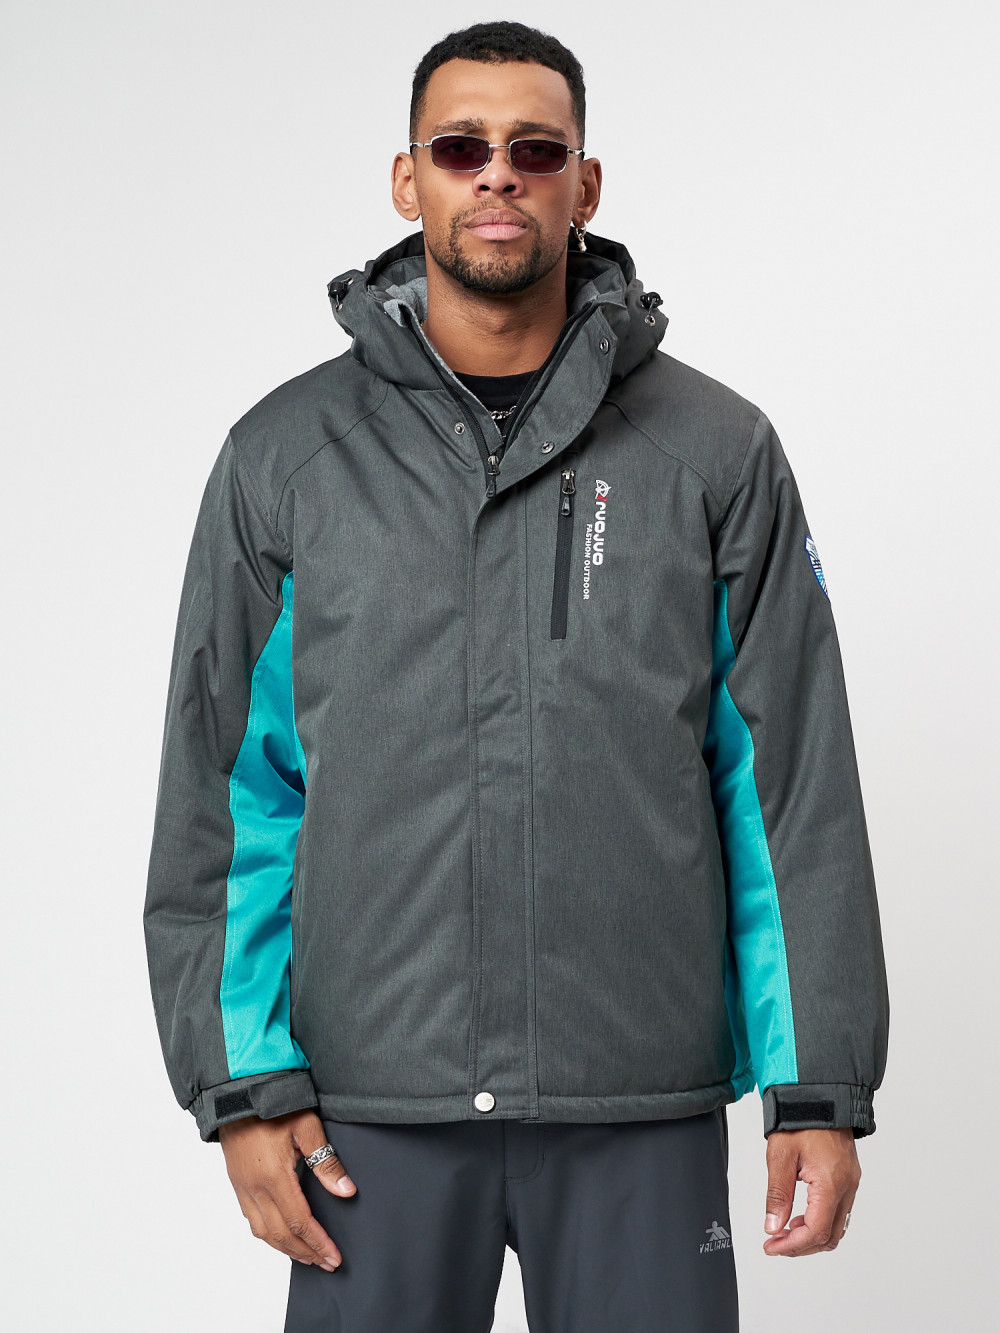 Купить оптом Спортивная куртка мужская зимняя серого цвета 78016Sr в Екатеринбурге